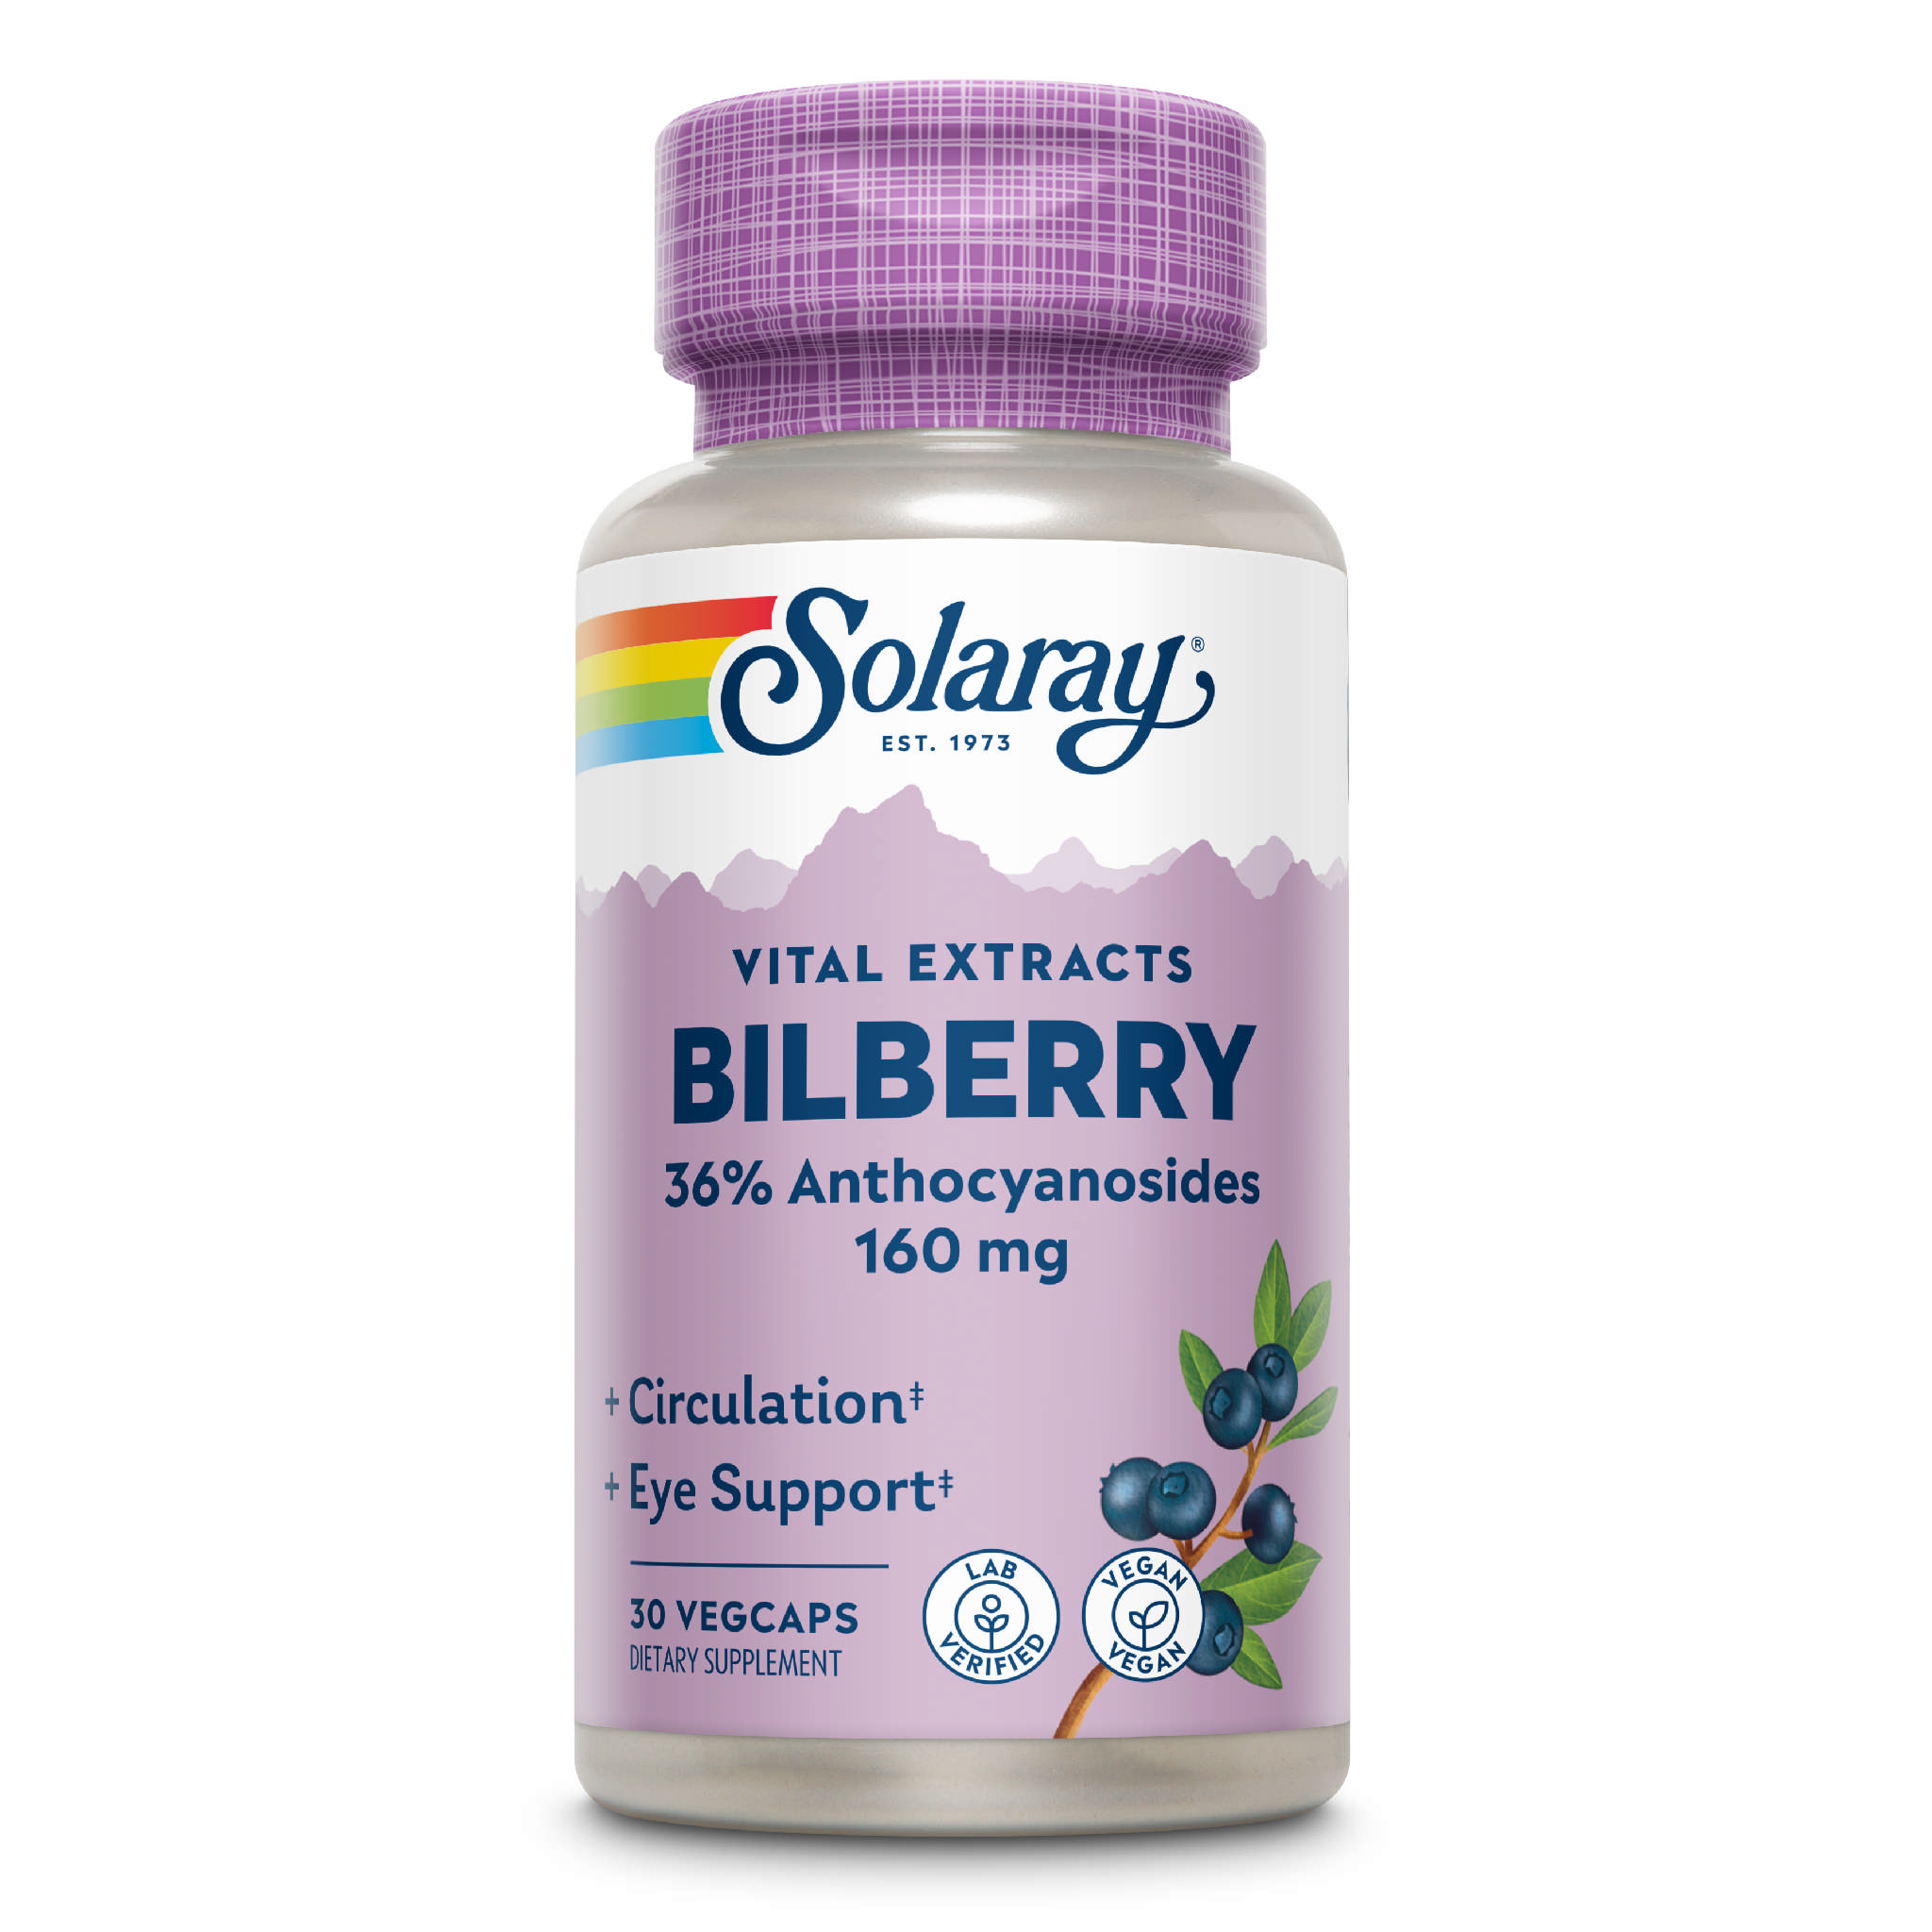 Solaray - Bilberry 160 mg 1 Daily